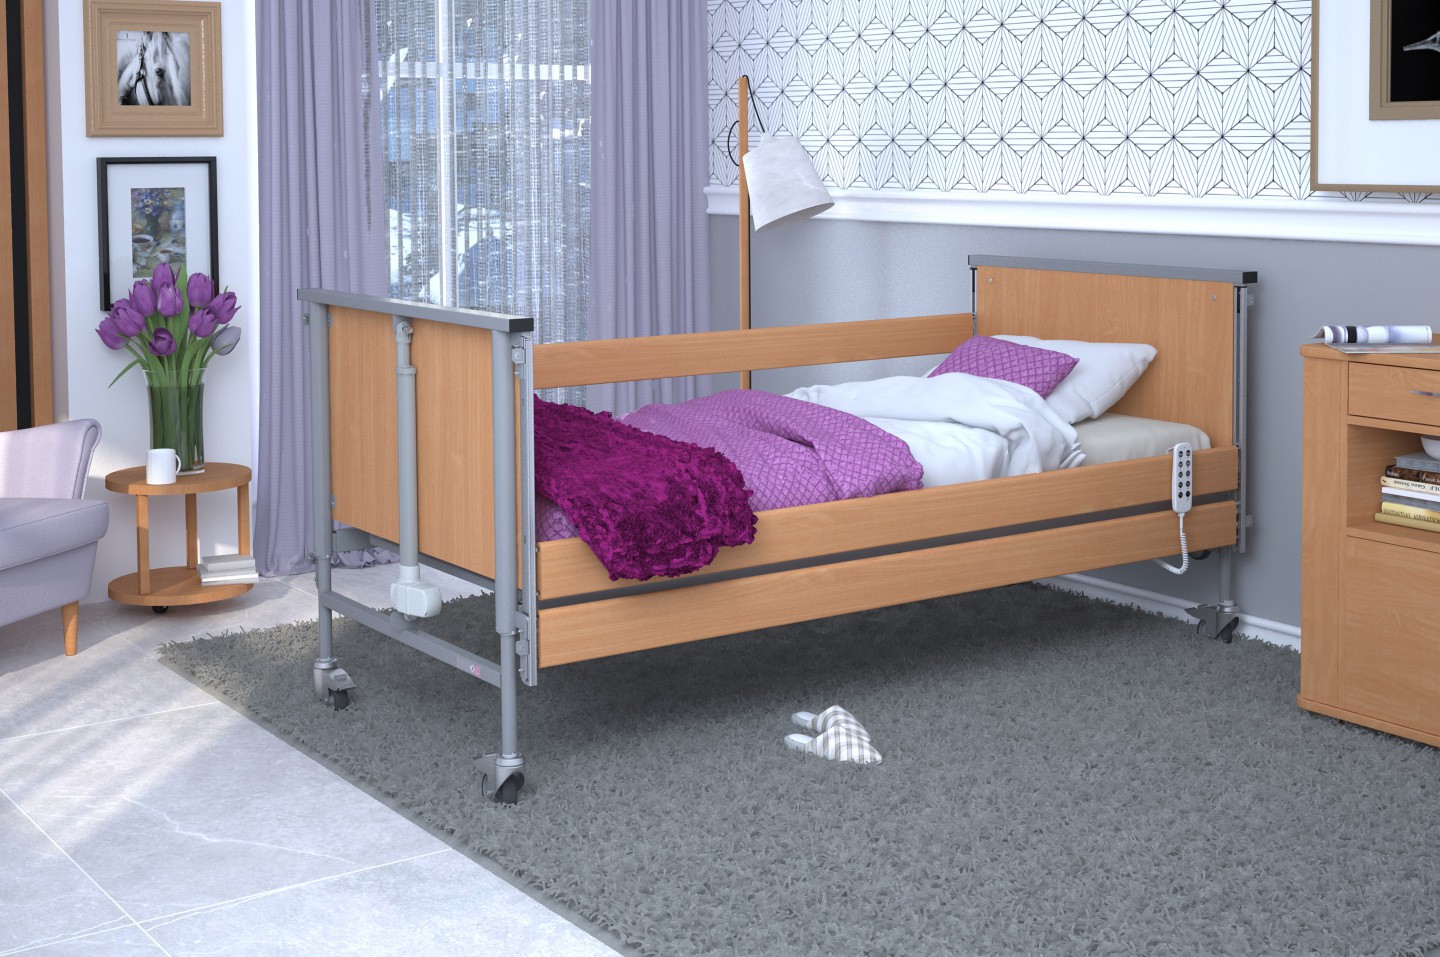 Łóżko rehabilitacyjne TAURUS 2 regulowane RehaBed : Rodzaj leża - Metalowe, Standardowe kolory ramy łóżka - Buk, Stolik typu Tablet: - Tak, Wysięgnik (max odciążenie 80 kg): - Tak